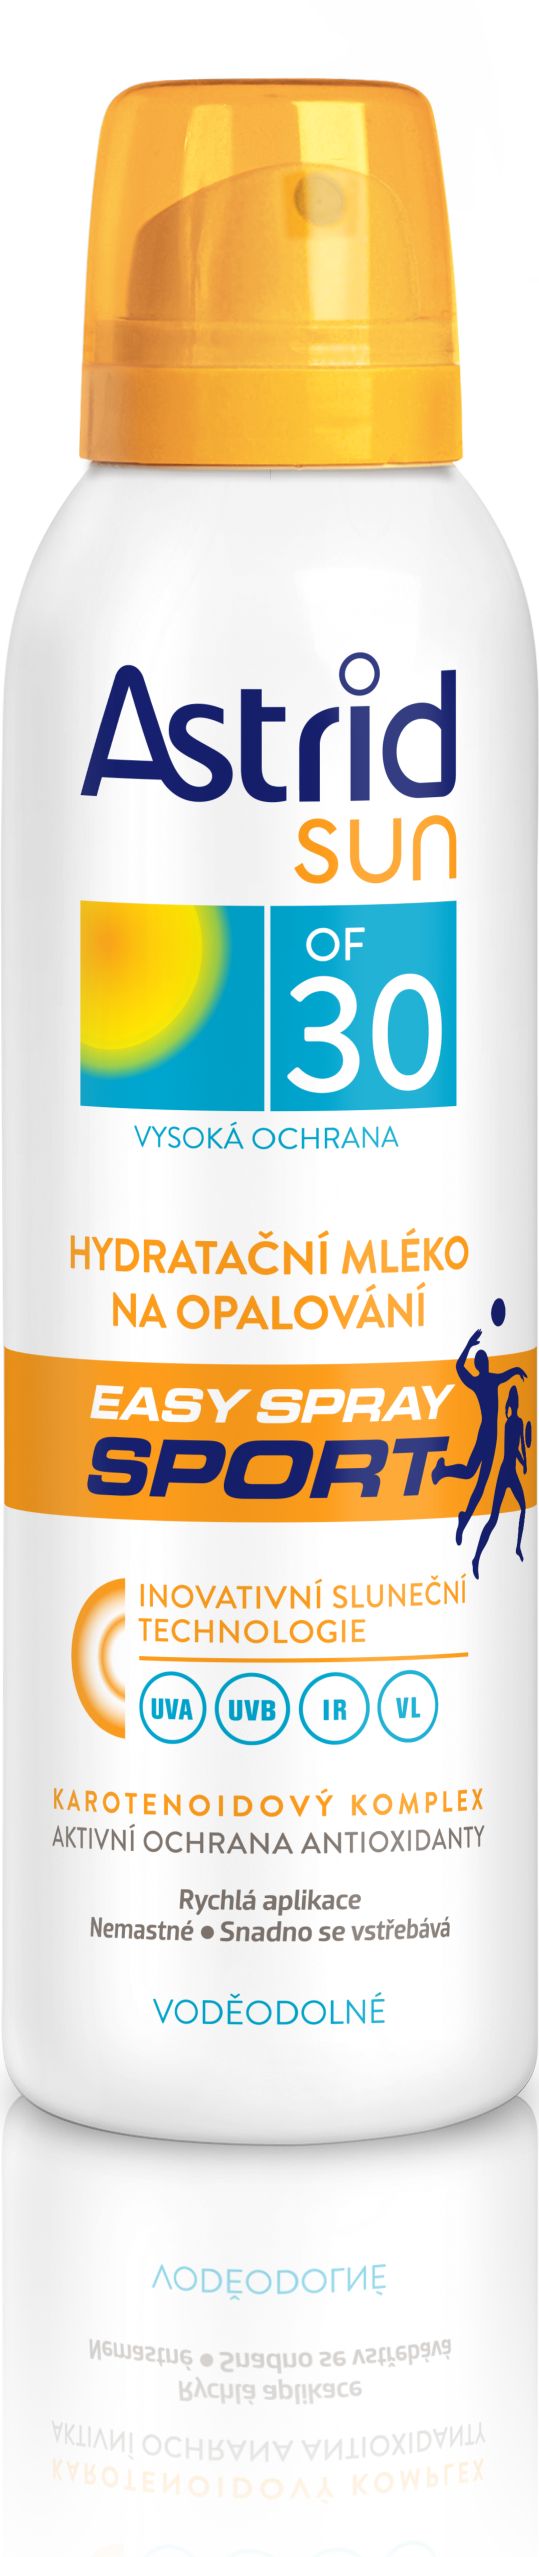 ASTRID SUN Hydratační mléko na opalování easy spray SPORT OF 30 150 ml - obrázek 1